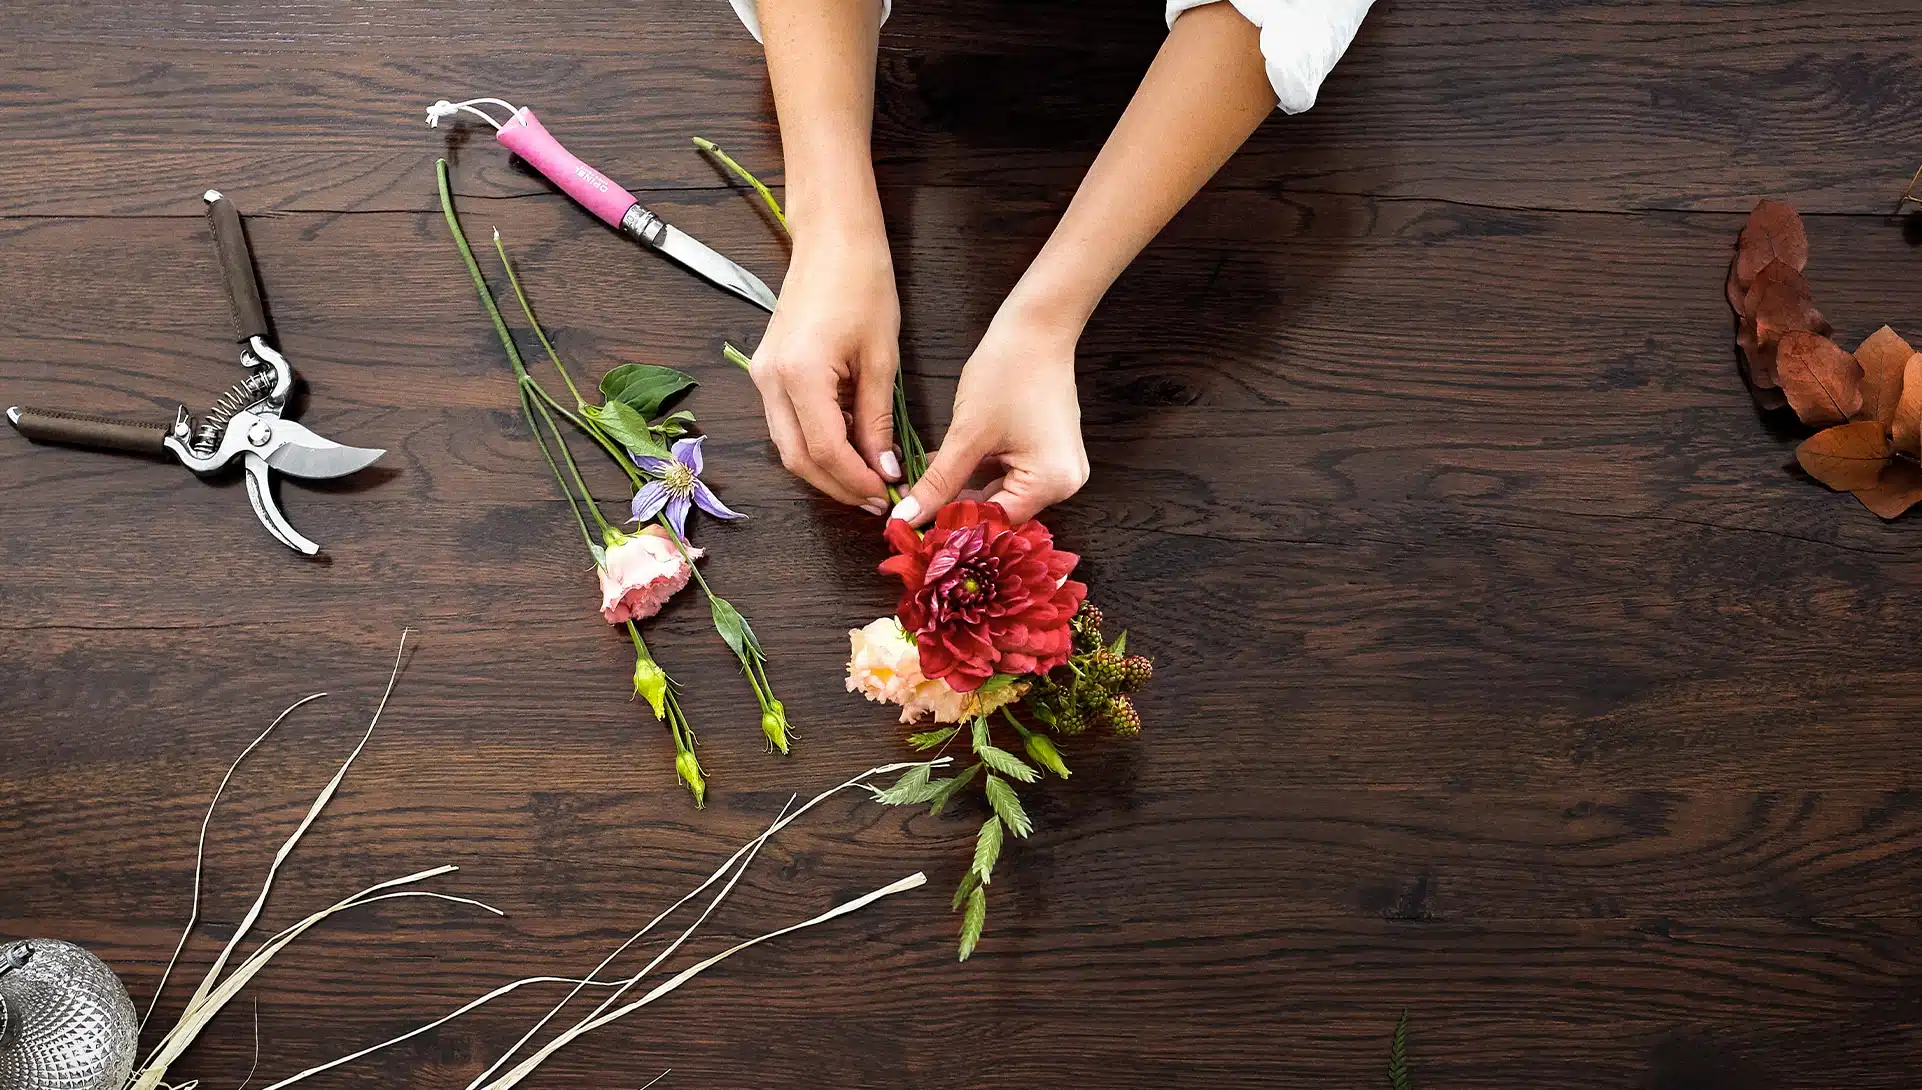 Comment composer votre propre bouquet ?